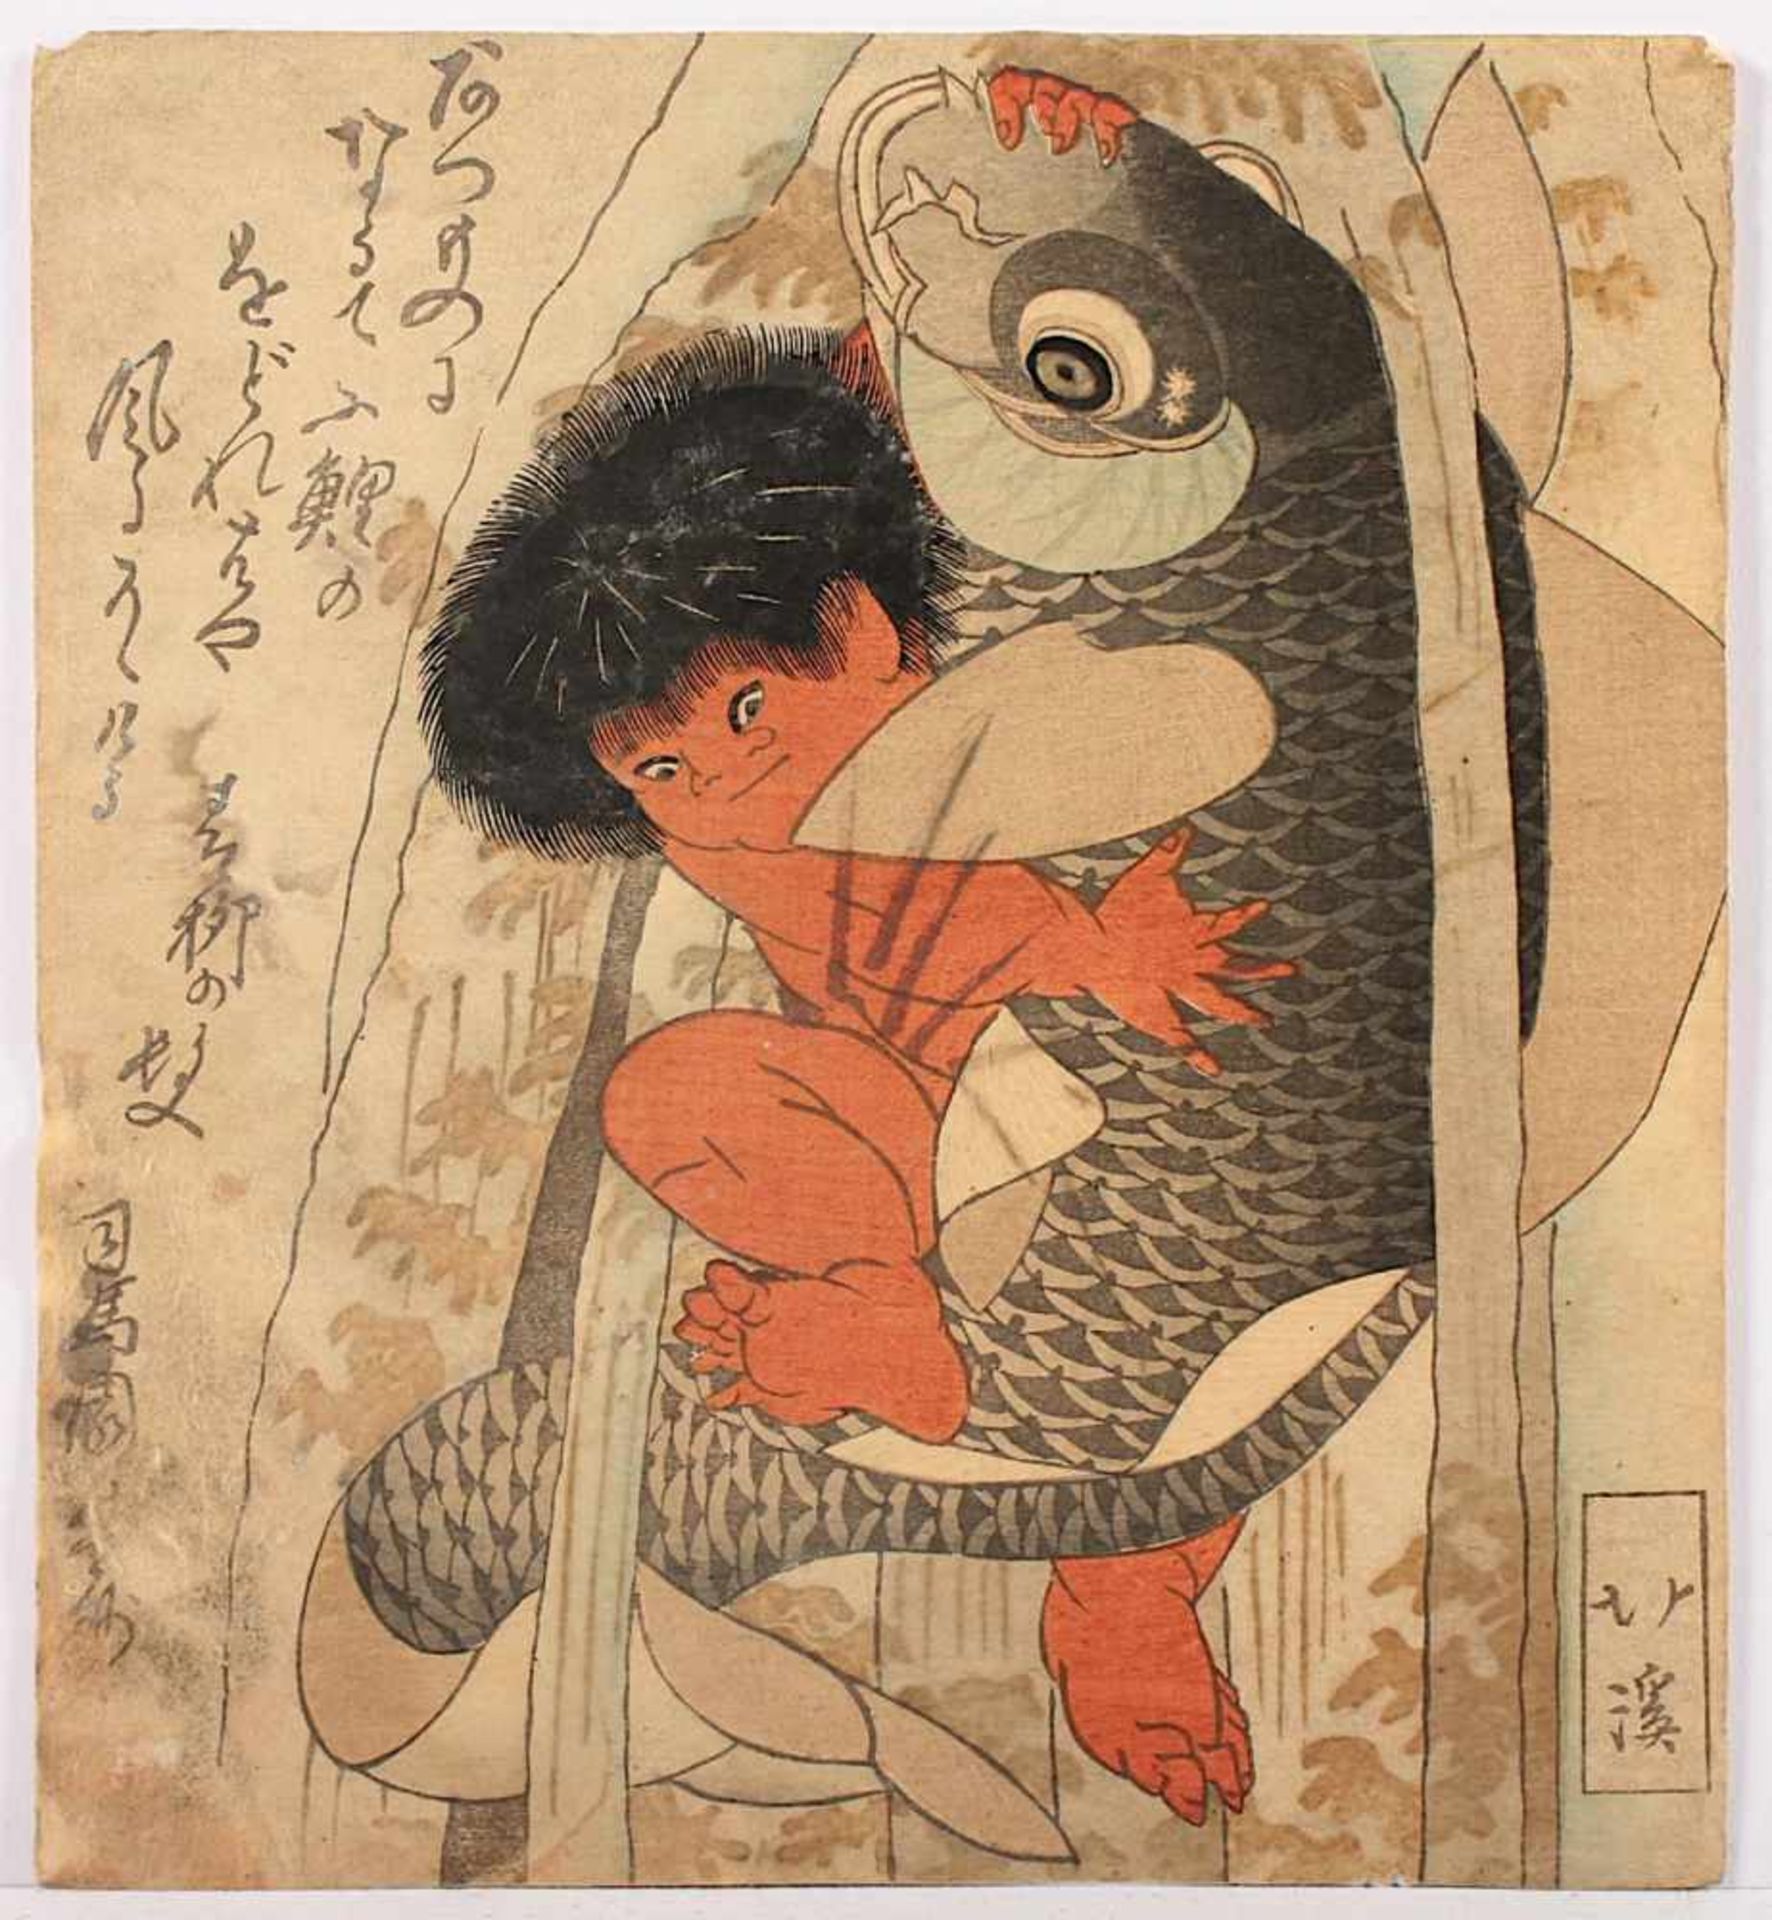 FARBHOLZSCHNITT, Totoya HOKKEI (1780-1850), Surimono, "Kintaro ringt mit einem Riesenkarpfen", 20,